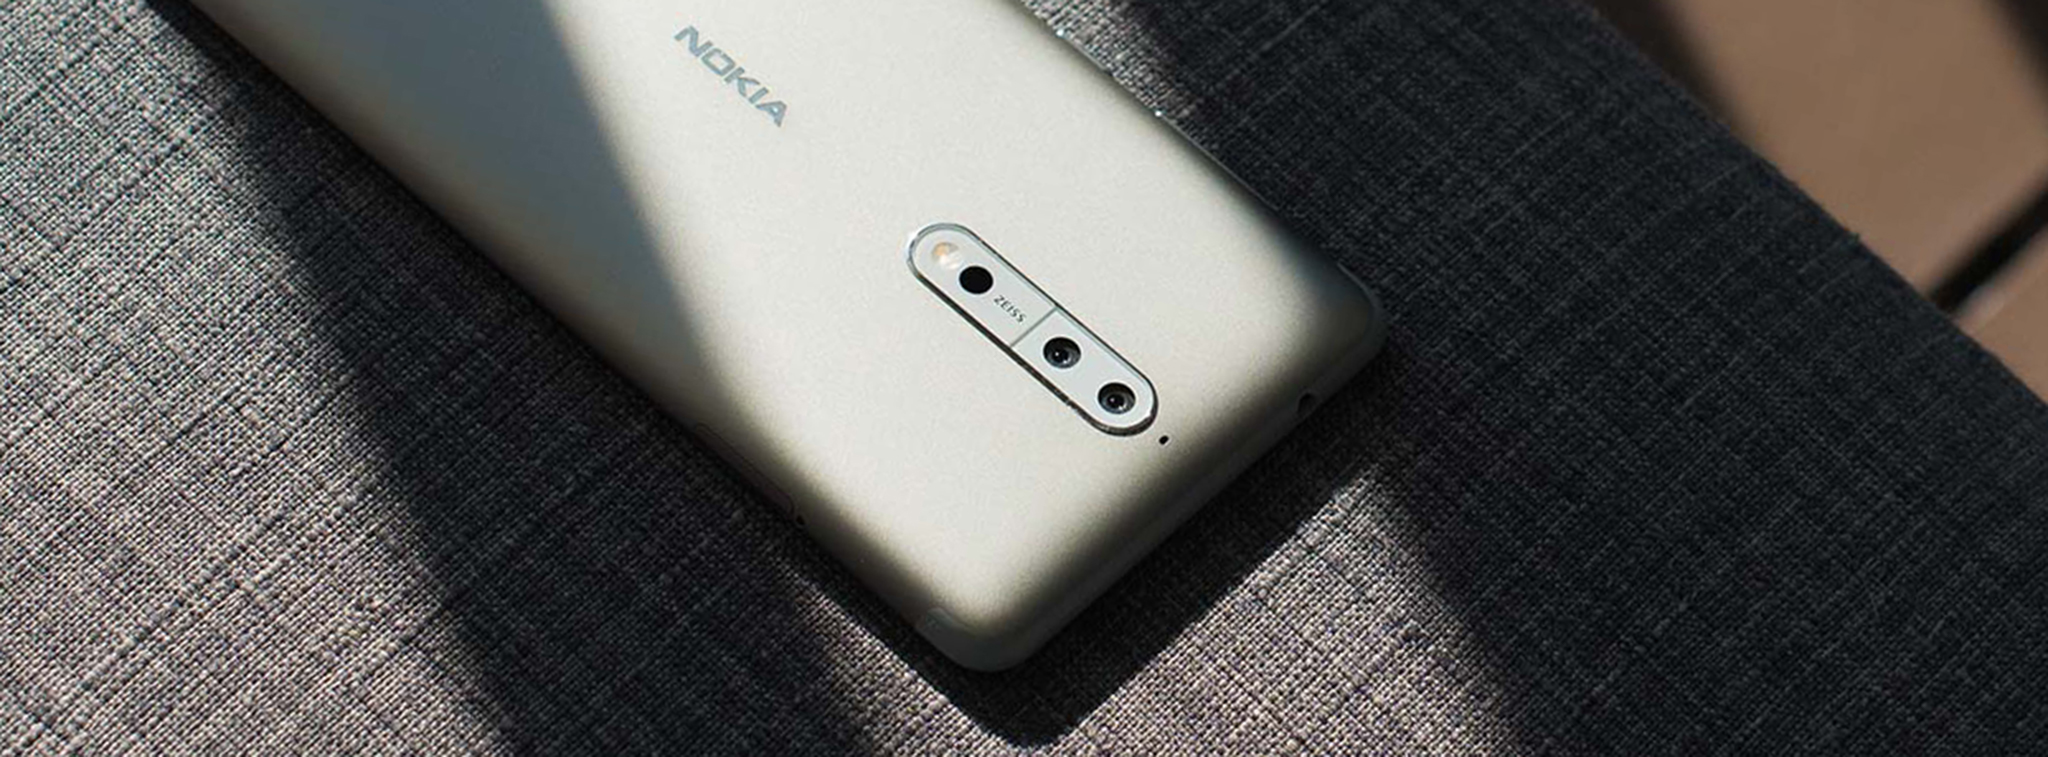 Nokia 9 lộ diện trên FCC: màn hình OLED 5.5", Snapdragon 835, Android 8, camera kép, pin 3250mAh